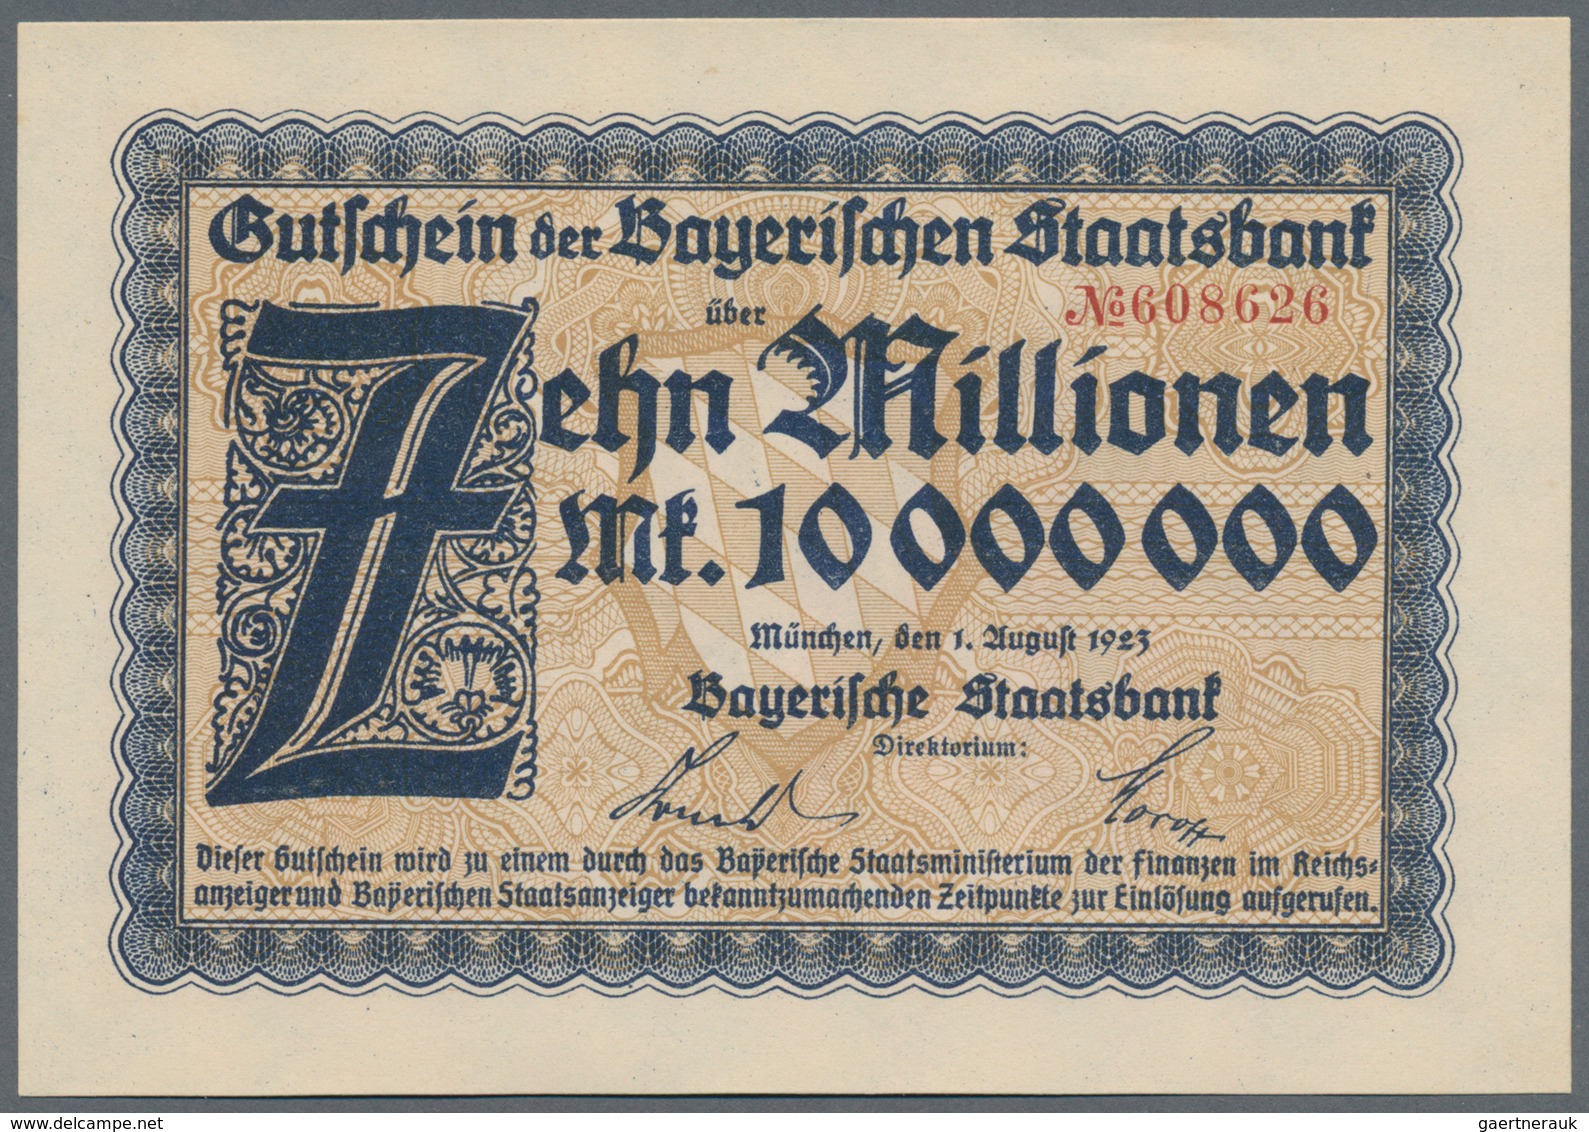 Deutschland - Länderscheine: Lot mit 14 Banknoten, dabei 5 Rentenmark 1926 in VF, DDR 10 Mark 1954 M